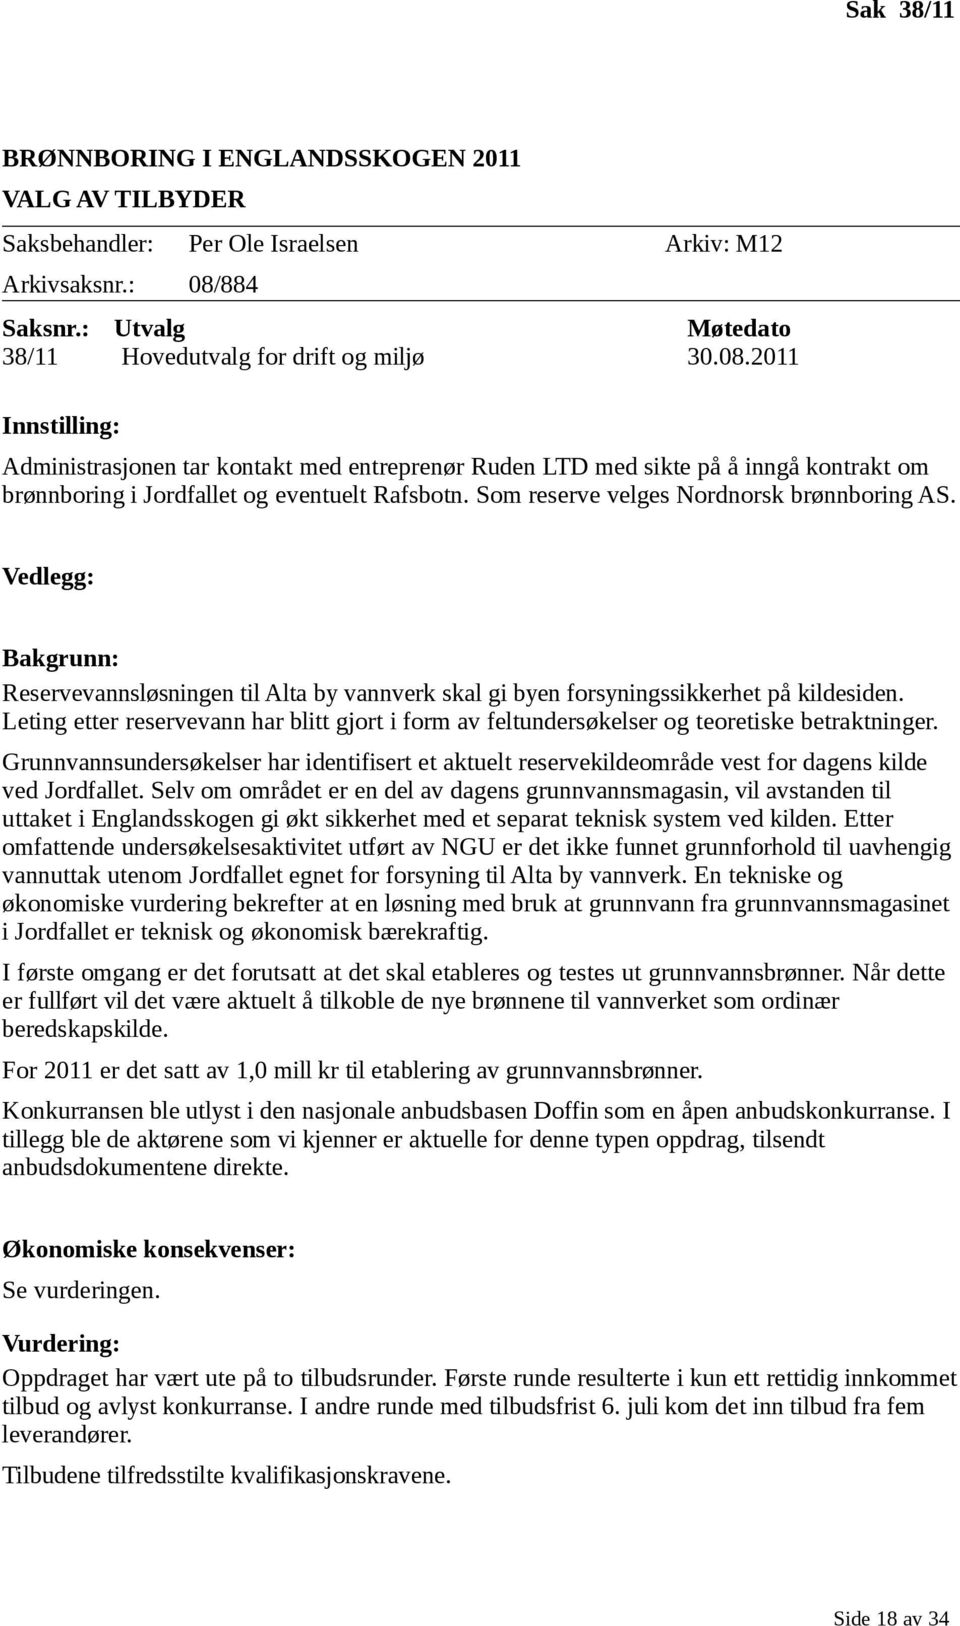 2011 Innstilling: Administrasjonen tar kontakt med entreprenør Ruden LTD med sikte på å inngå kontrakt om brønnboring i Jordfallet og eventuelt Rafsbotn. Som reserve velges Nordnorsk brønnboring AS.